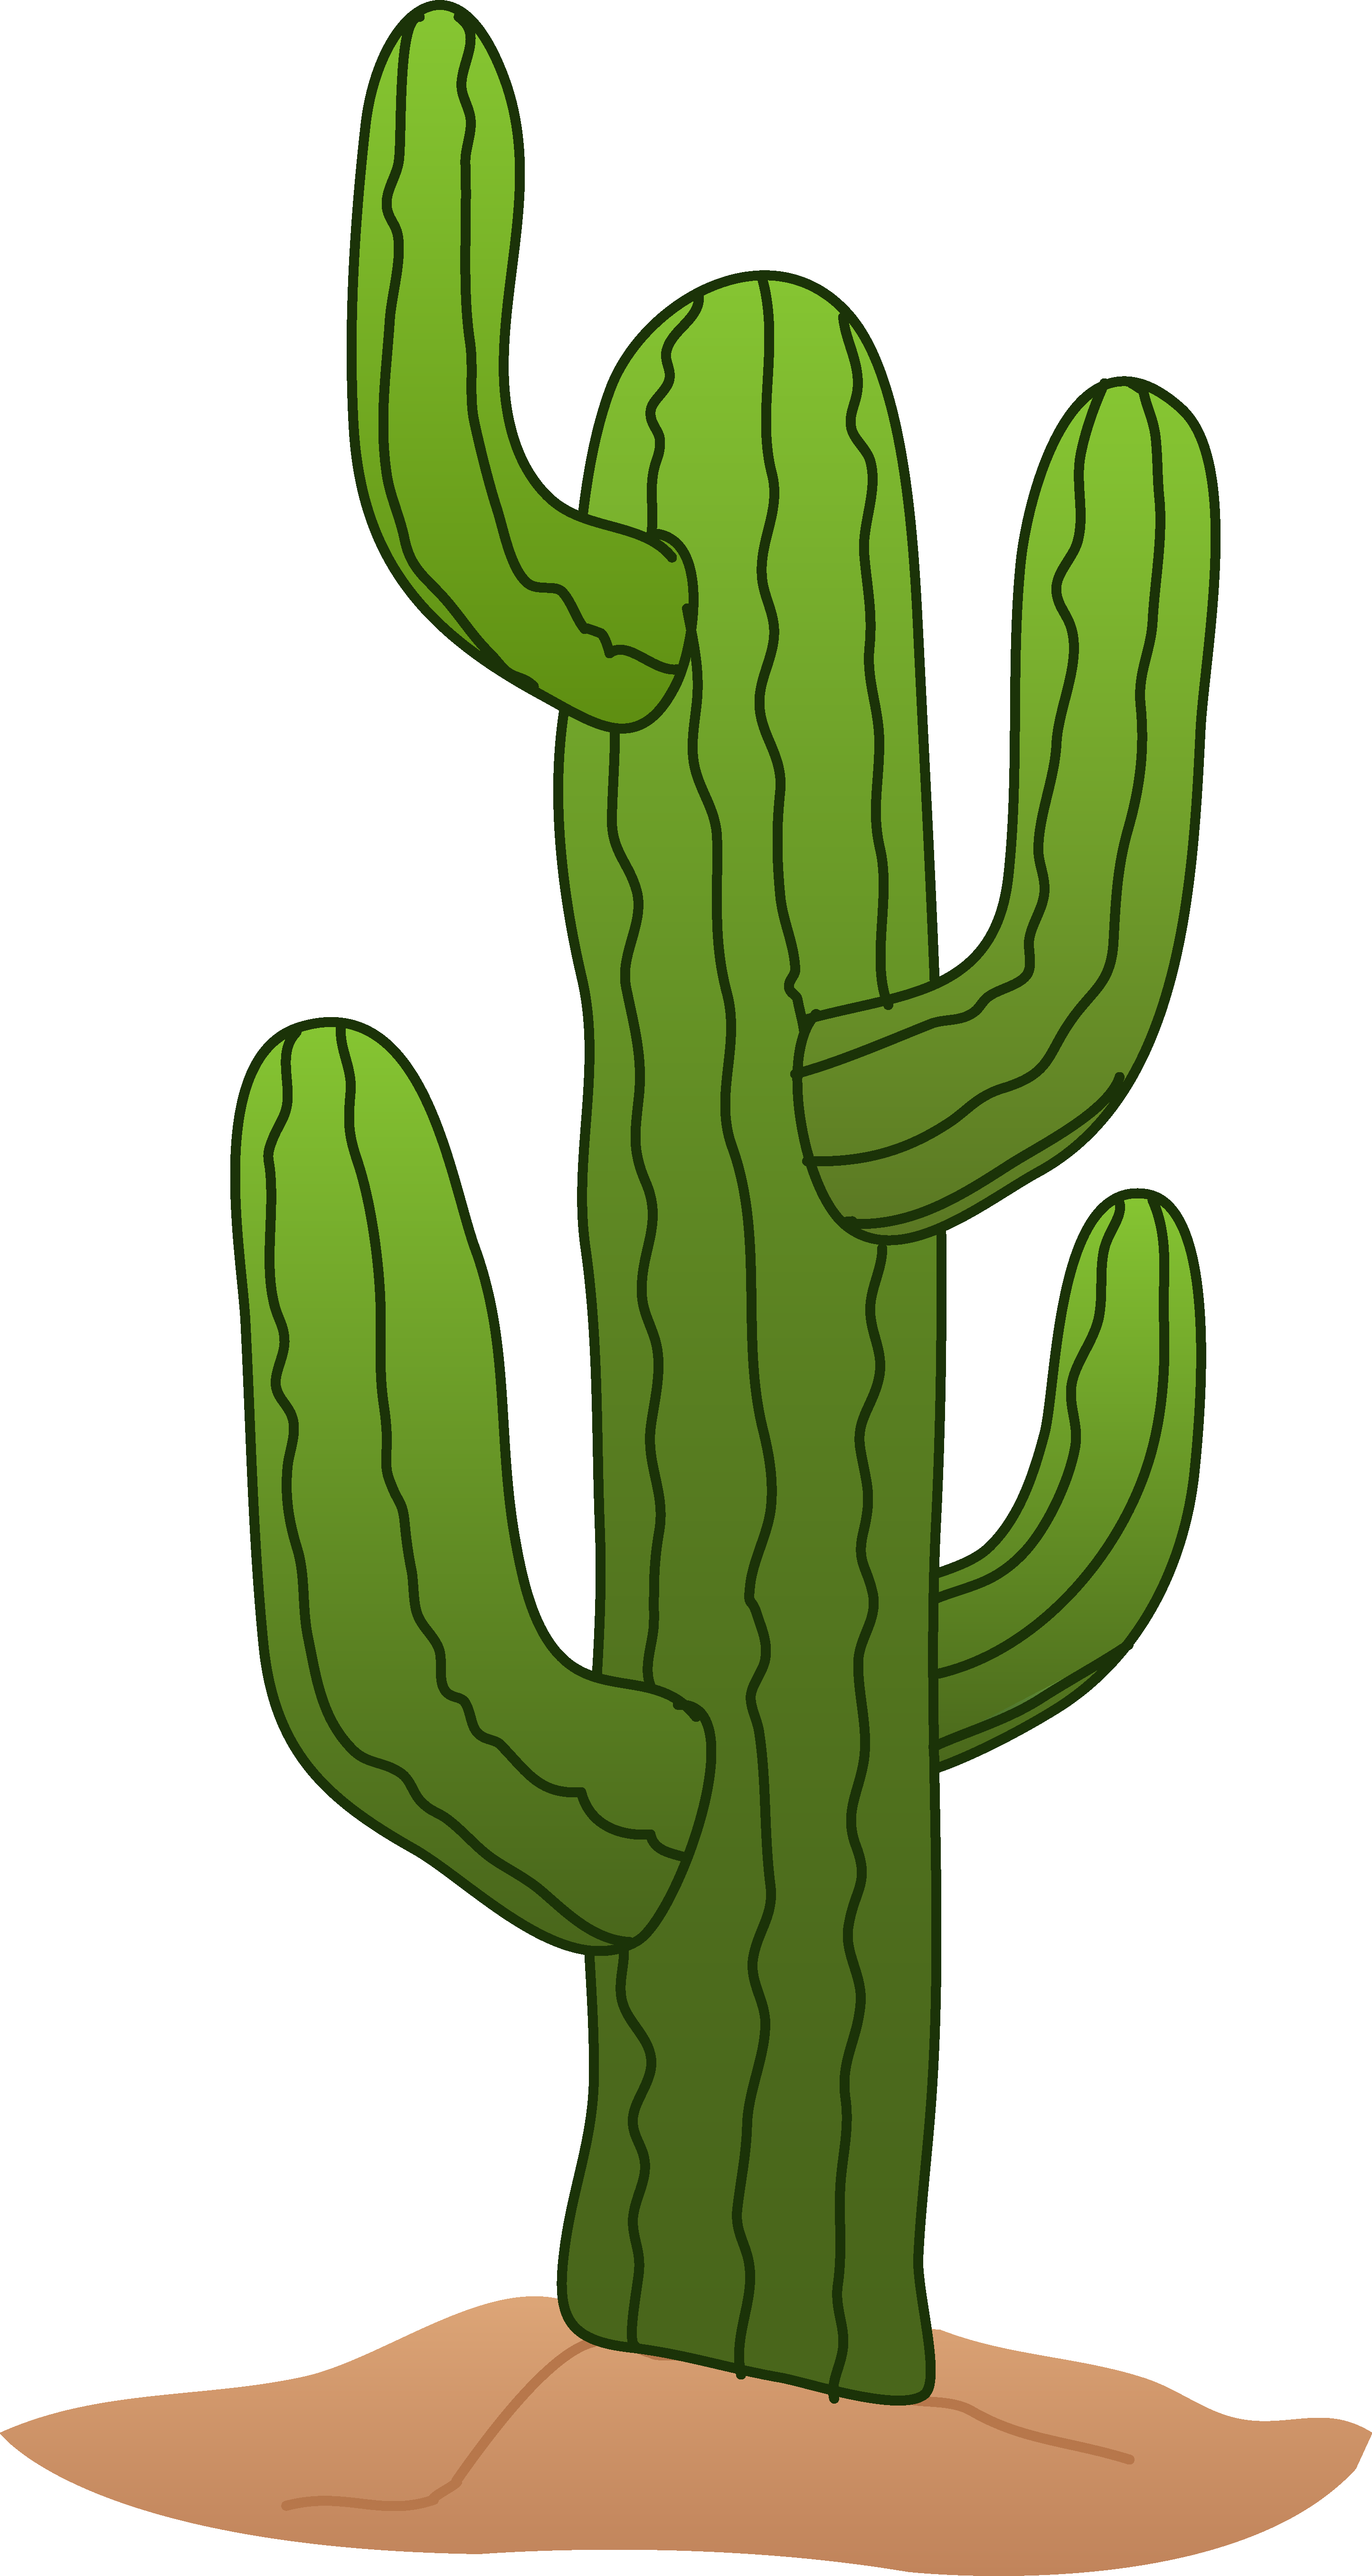 cactus clipart. Cactus Image Free